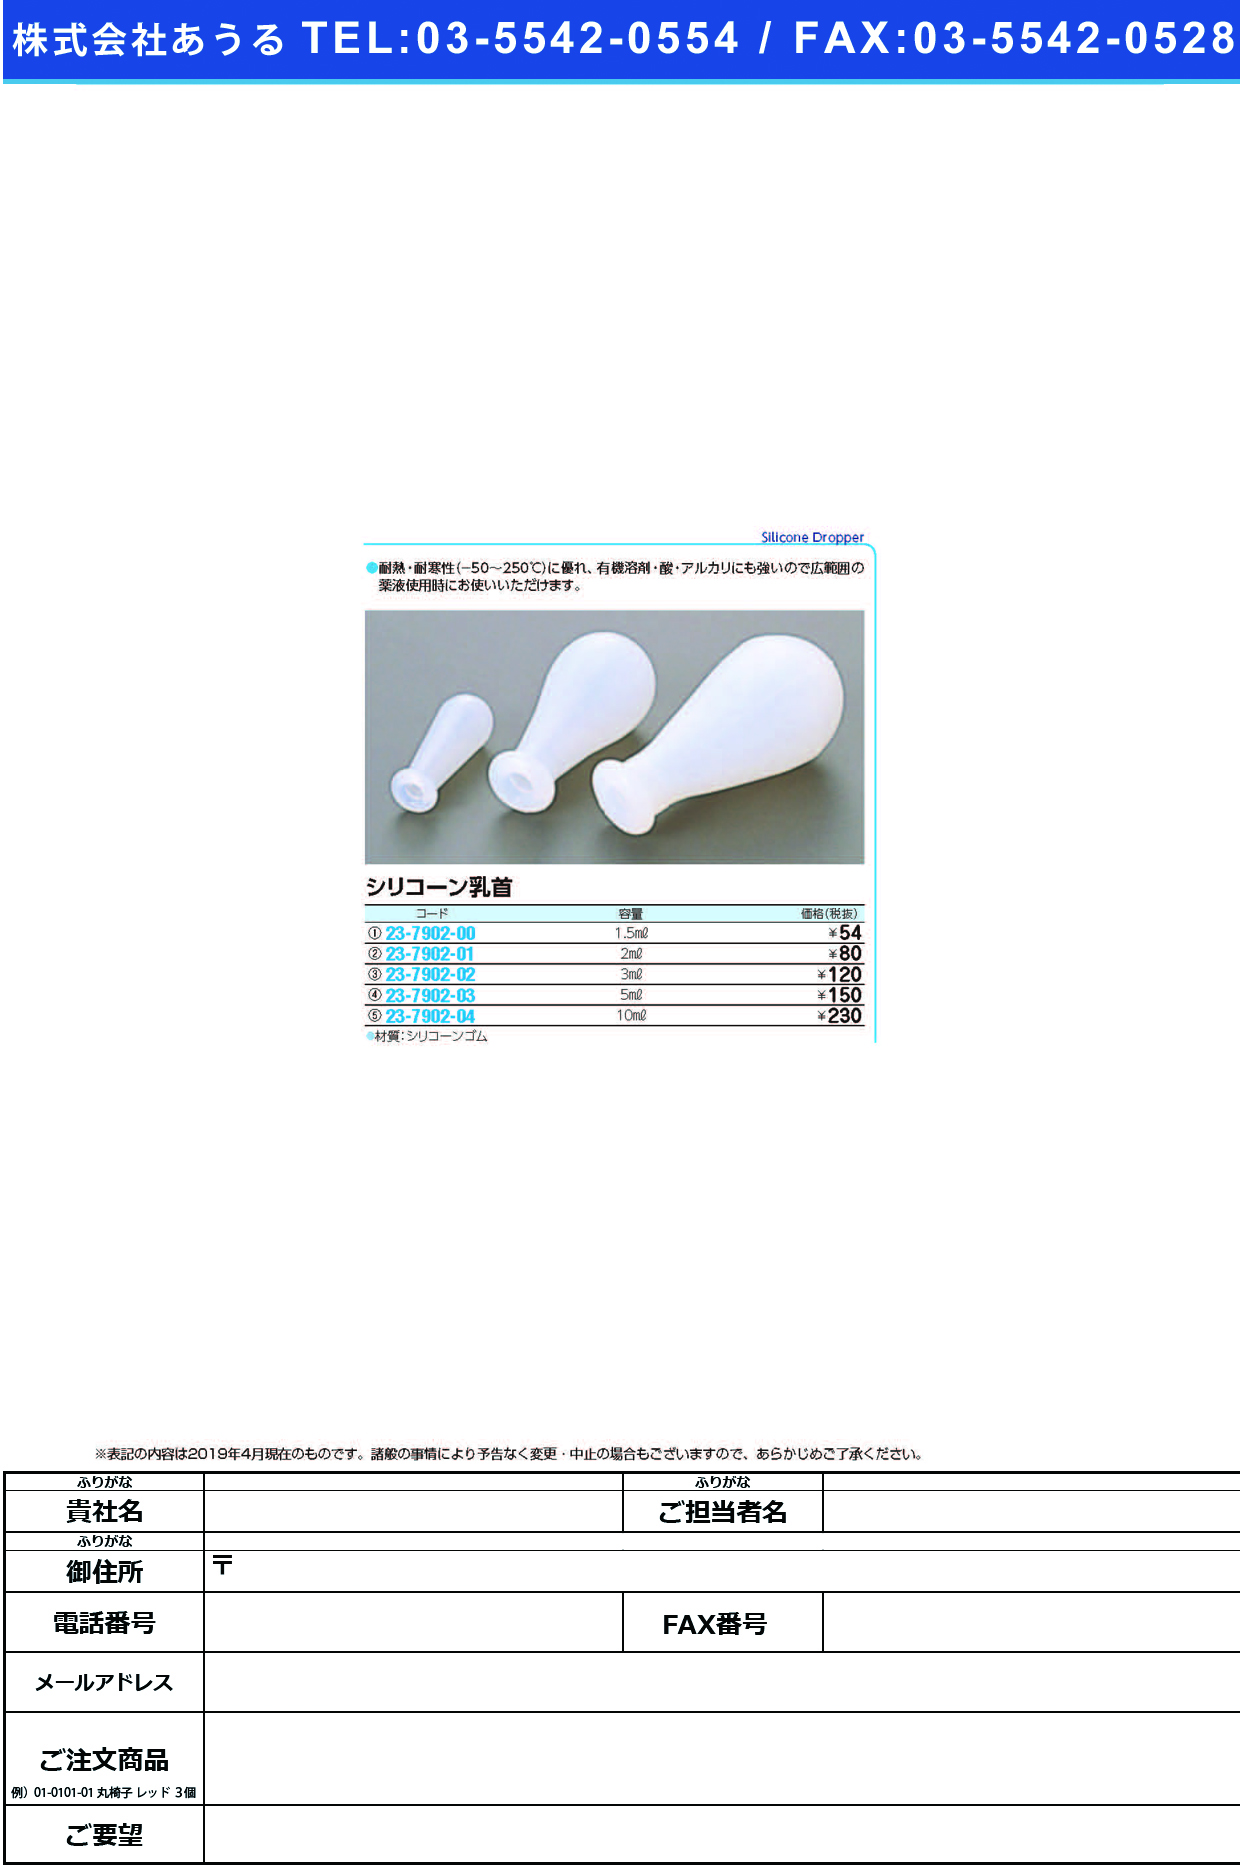 (23-7902-00)シリコーン乳首 01-327-01(1.5ML) ｼﾘｺｰﾝﾁｸﾋﾞ【1個単位】【2019年カタログ商品】